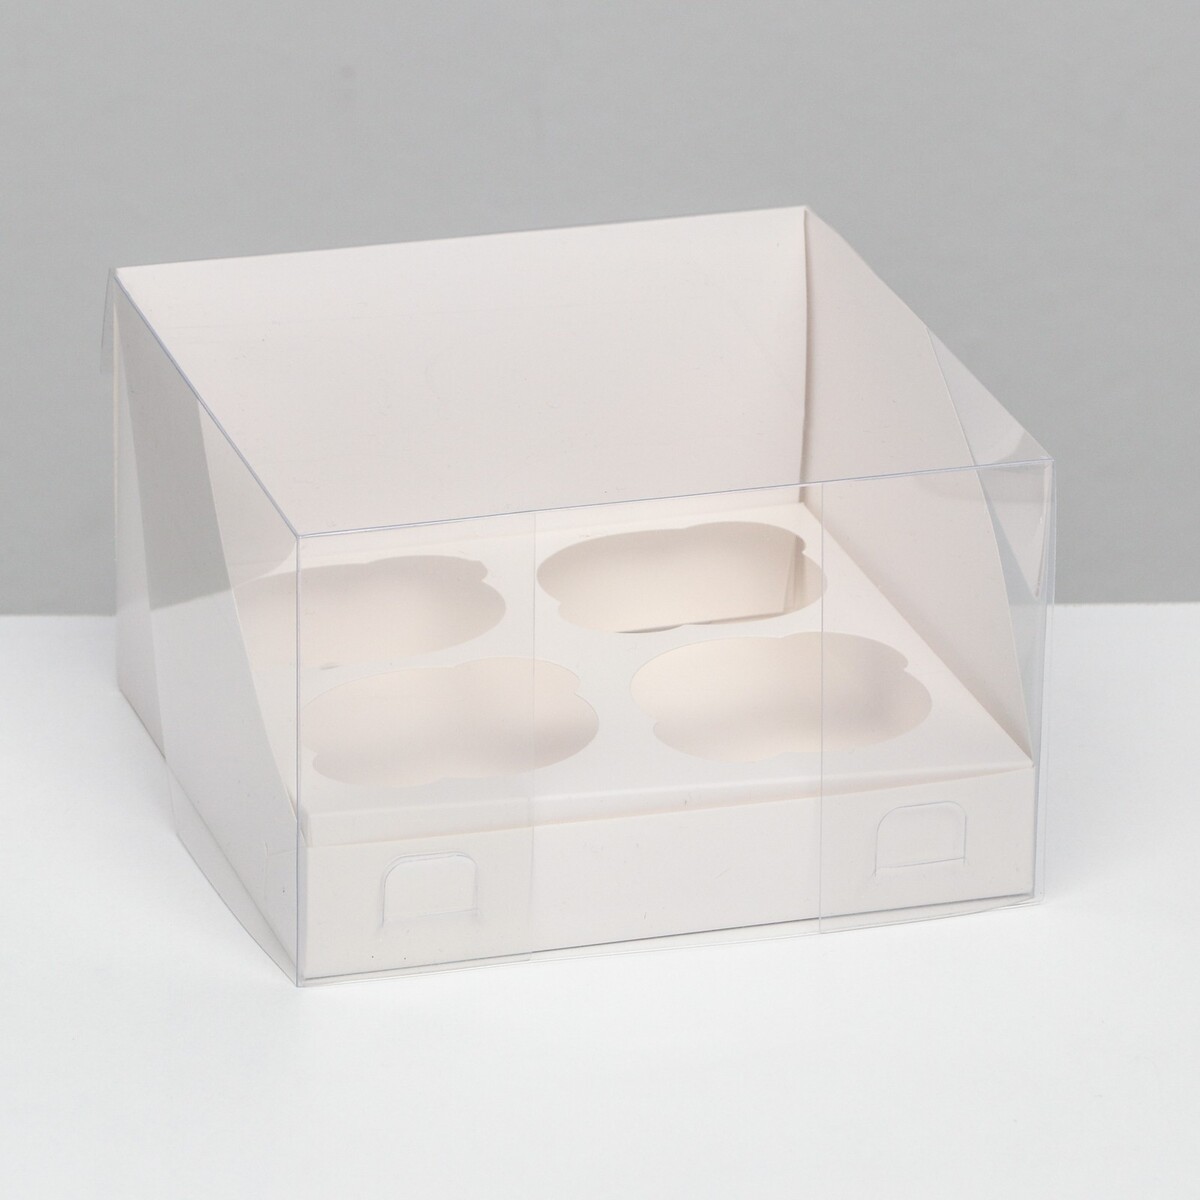 Кондитерская складная коробка для 4 капкейков, белая 16 х 16 х 14 см кондитерская складная коробка для 4 капкейков 16 х 16 х 10 красная